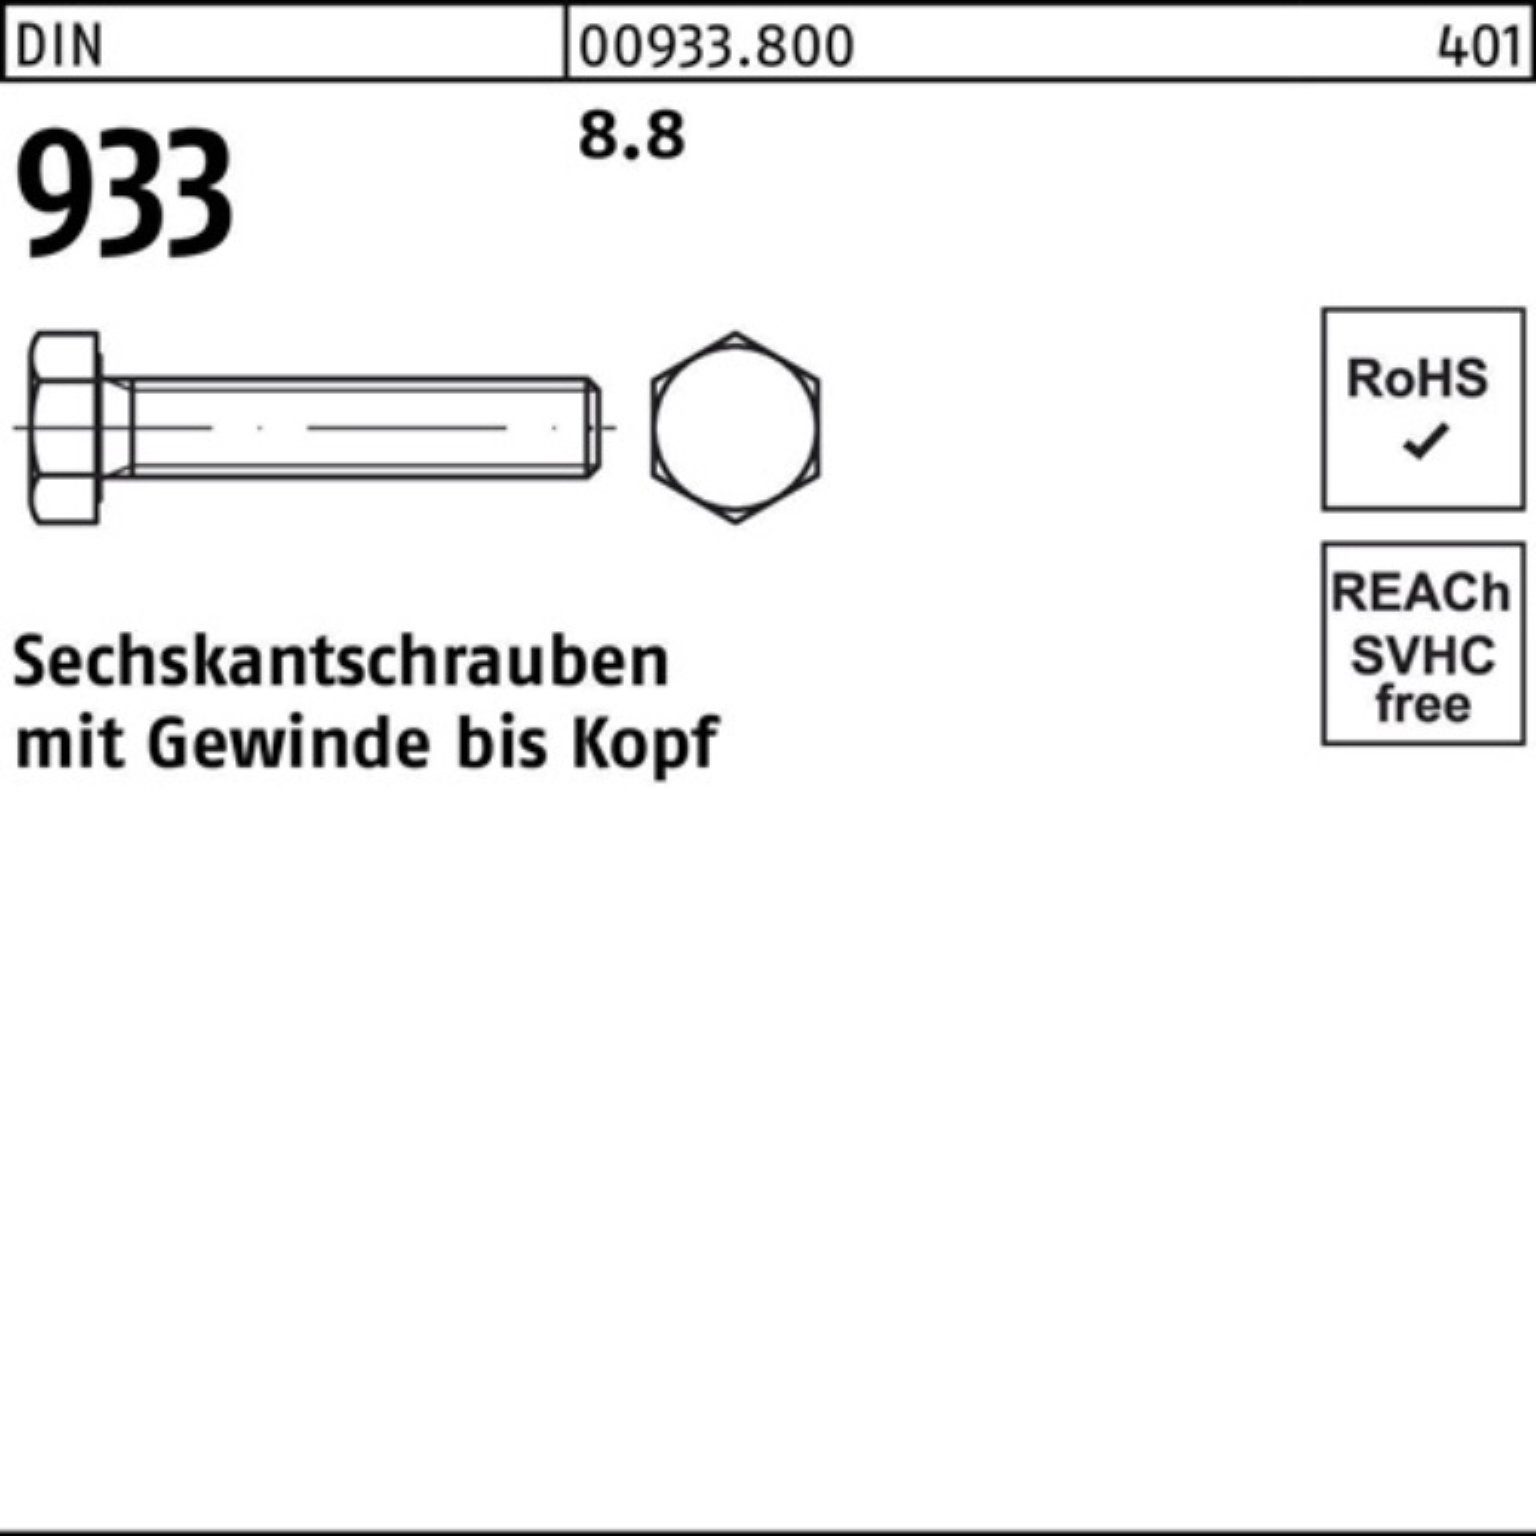 DIN 200 Reyher Sechskantschraube 75 200er M6x Sechskantschraube Pack 8.8 Stück 933 DIN 933 VG